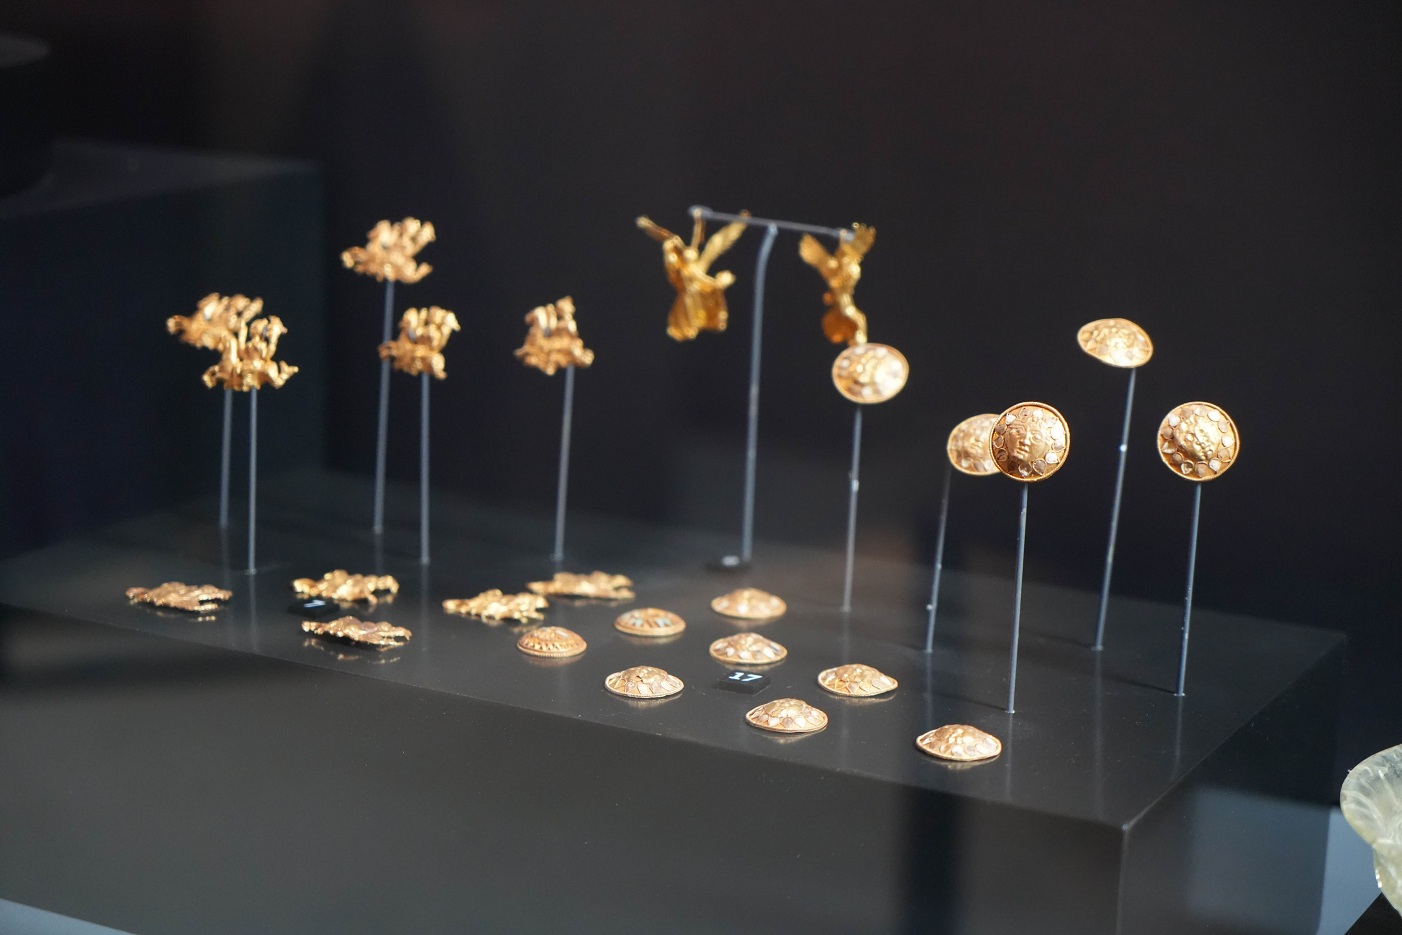 Amisos Hazineleri Samsun Müzesi'nde Sergileniyor (4)